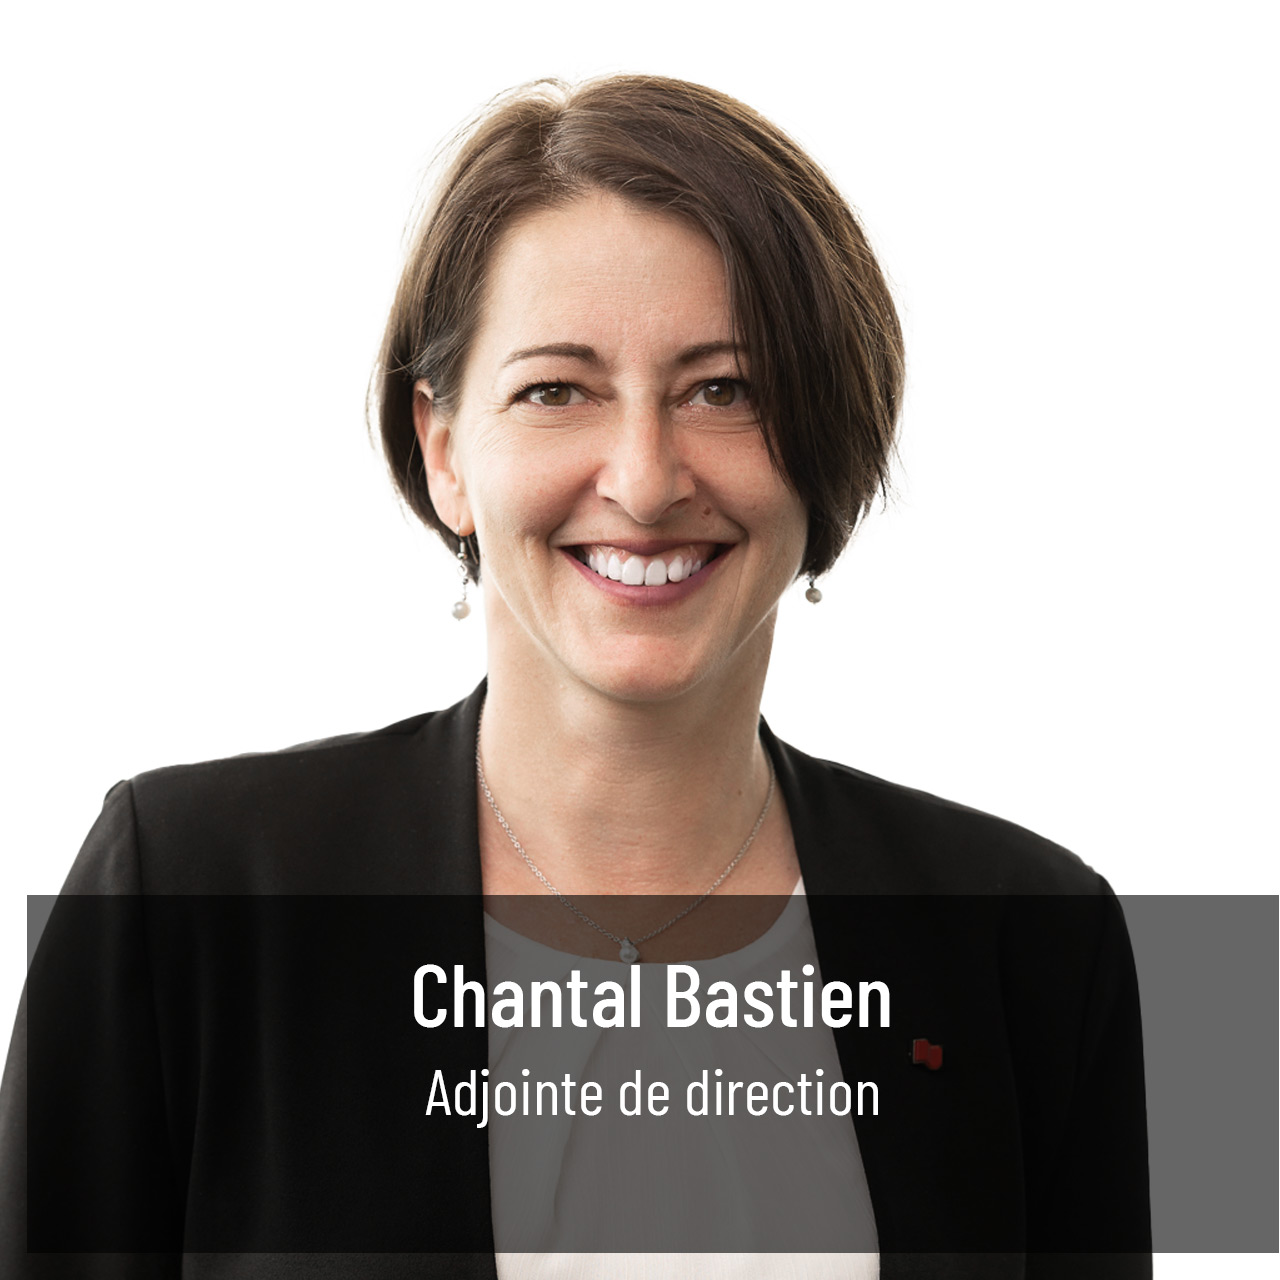 Chantal Bastien